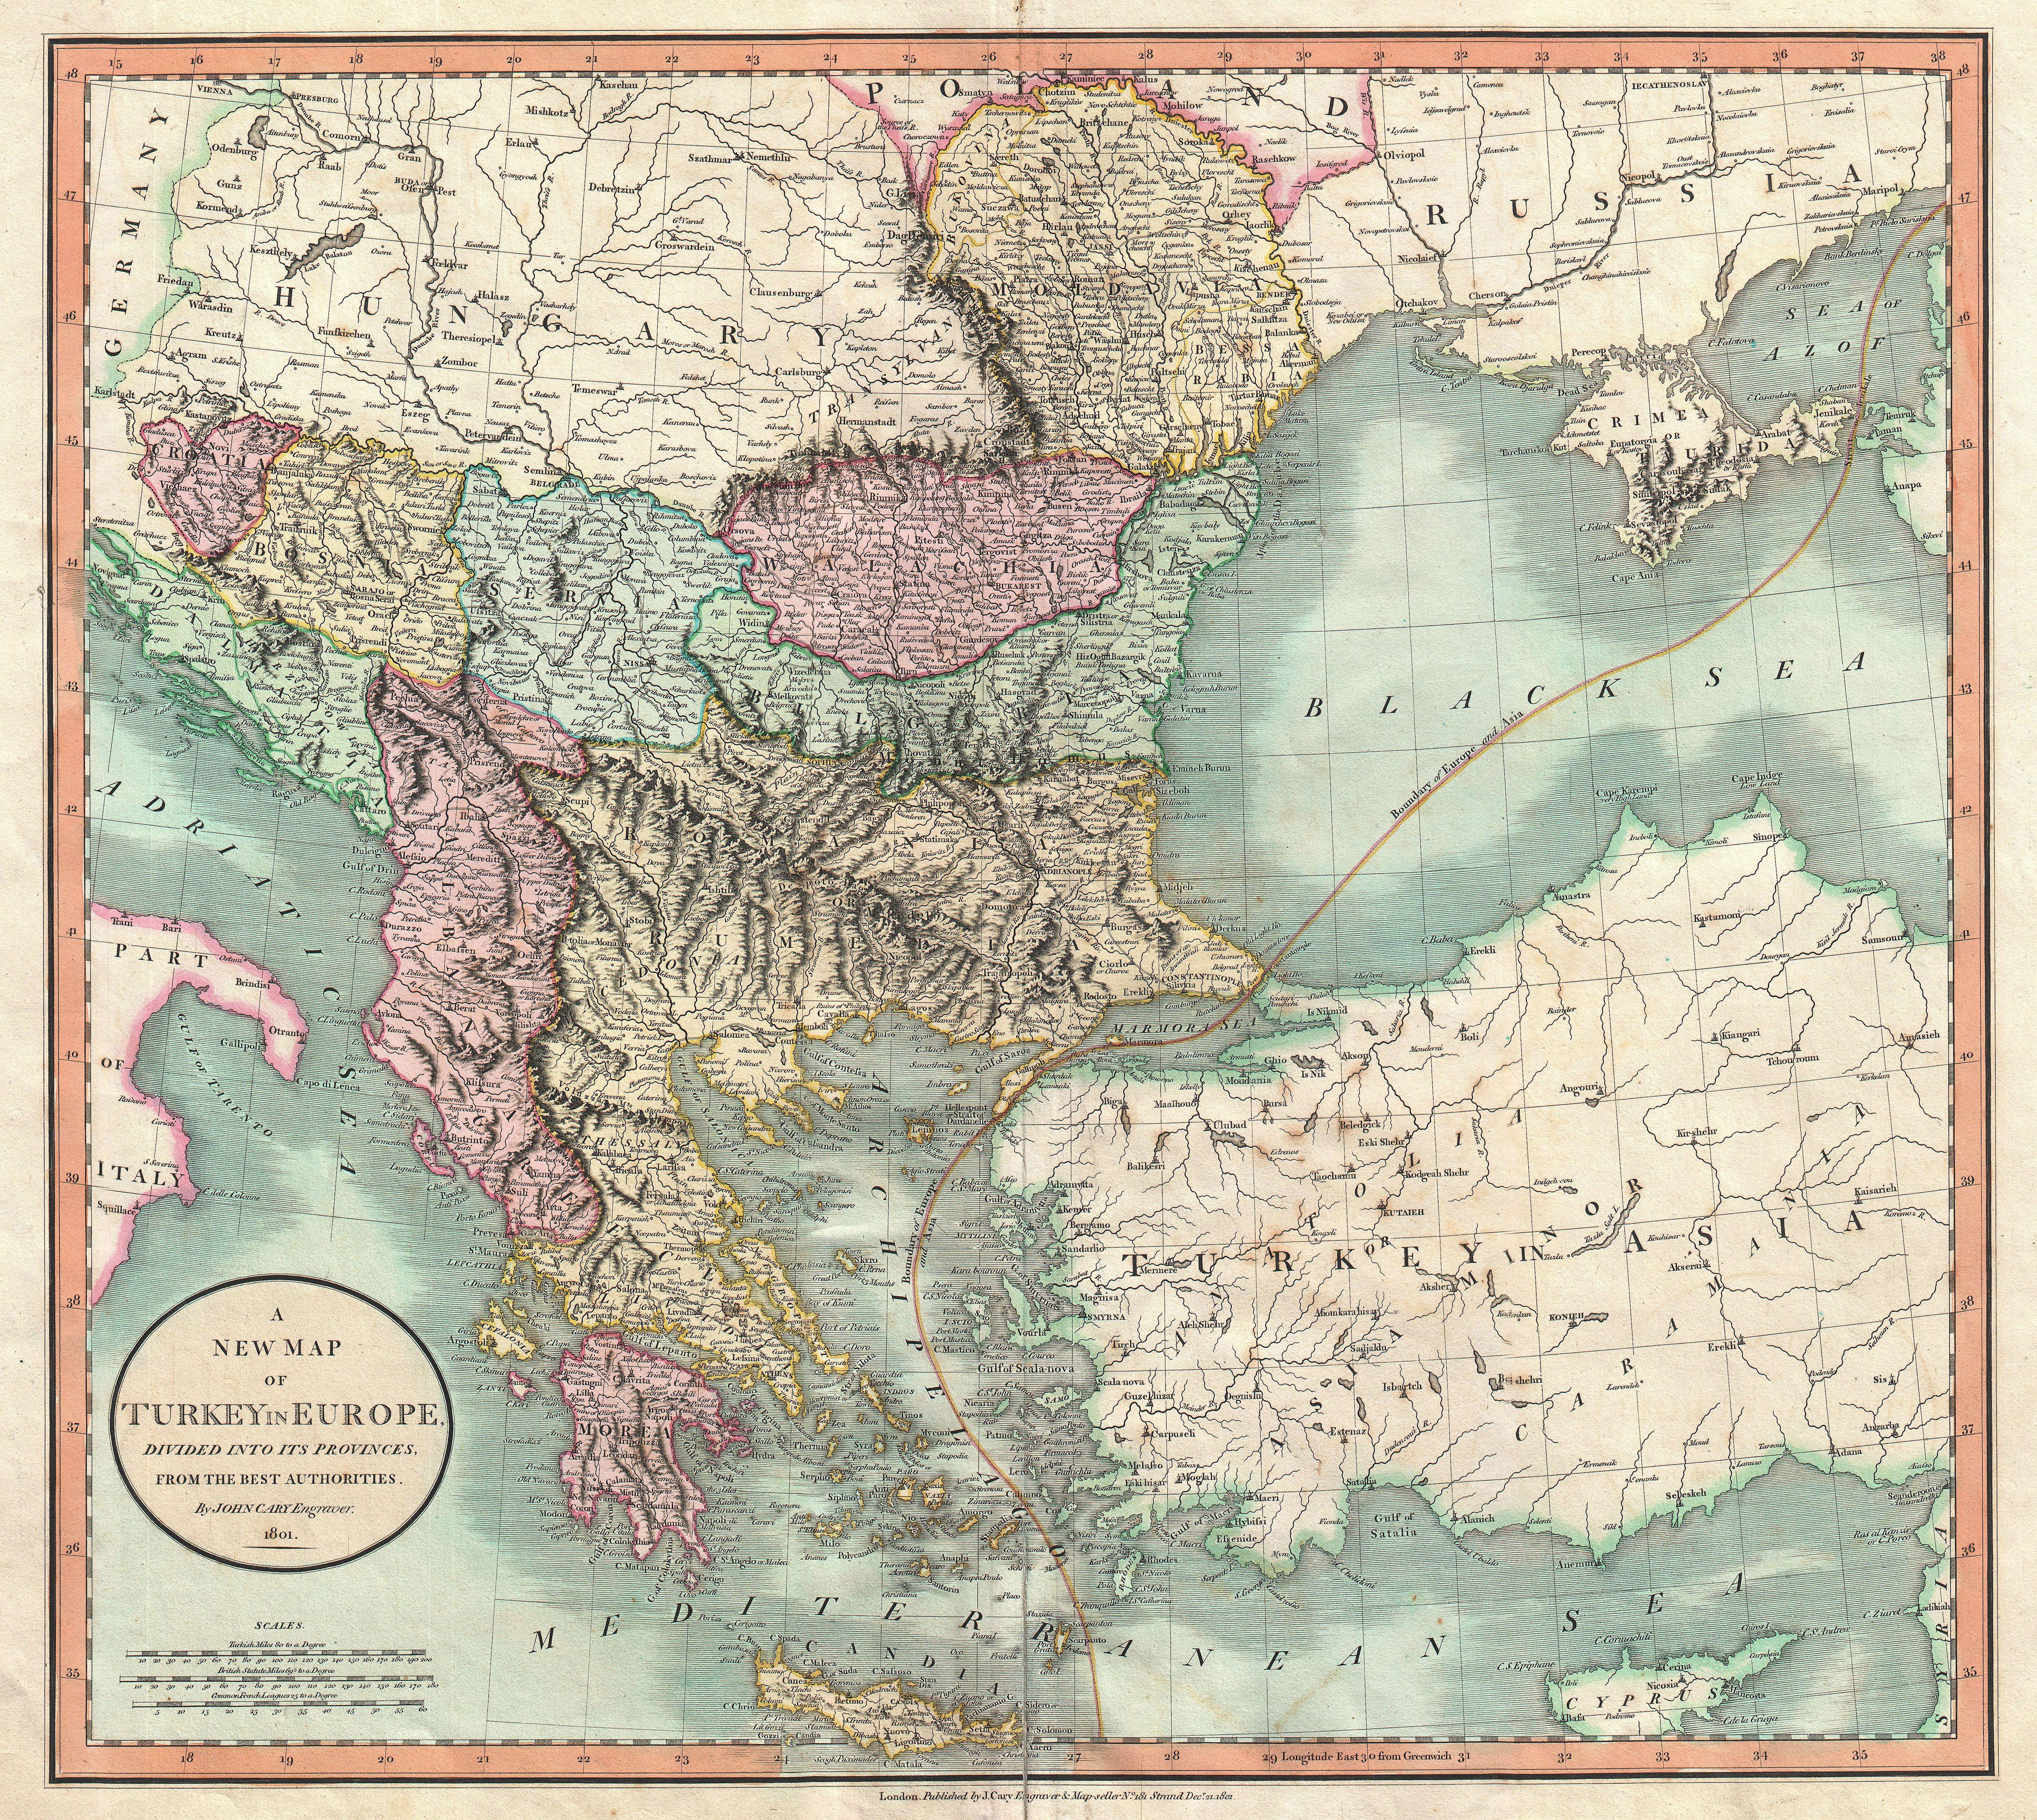 The Balkans Map